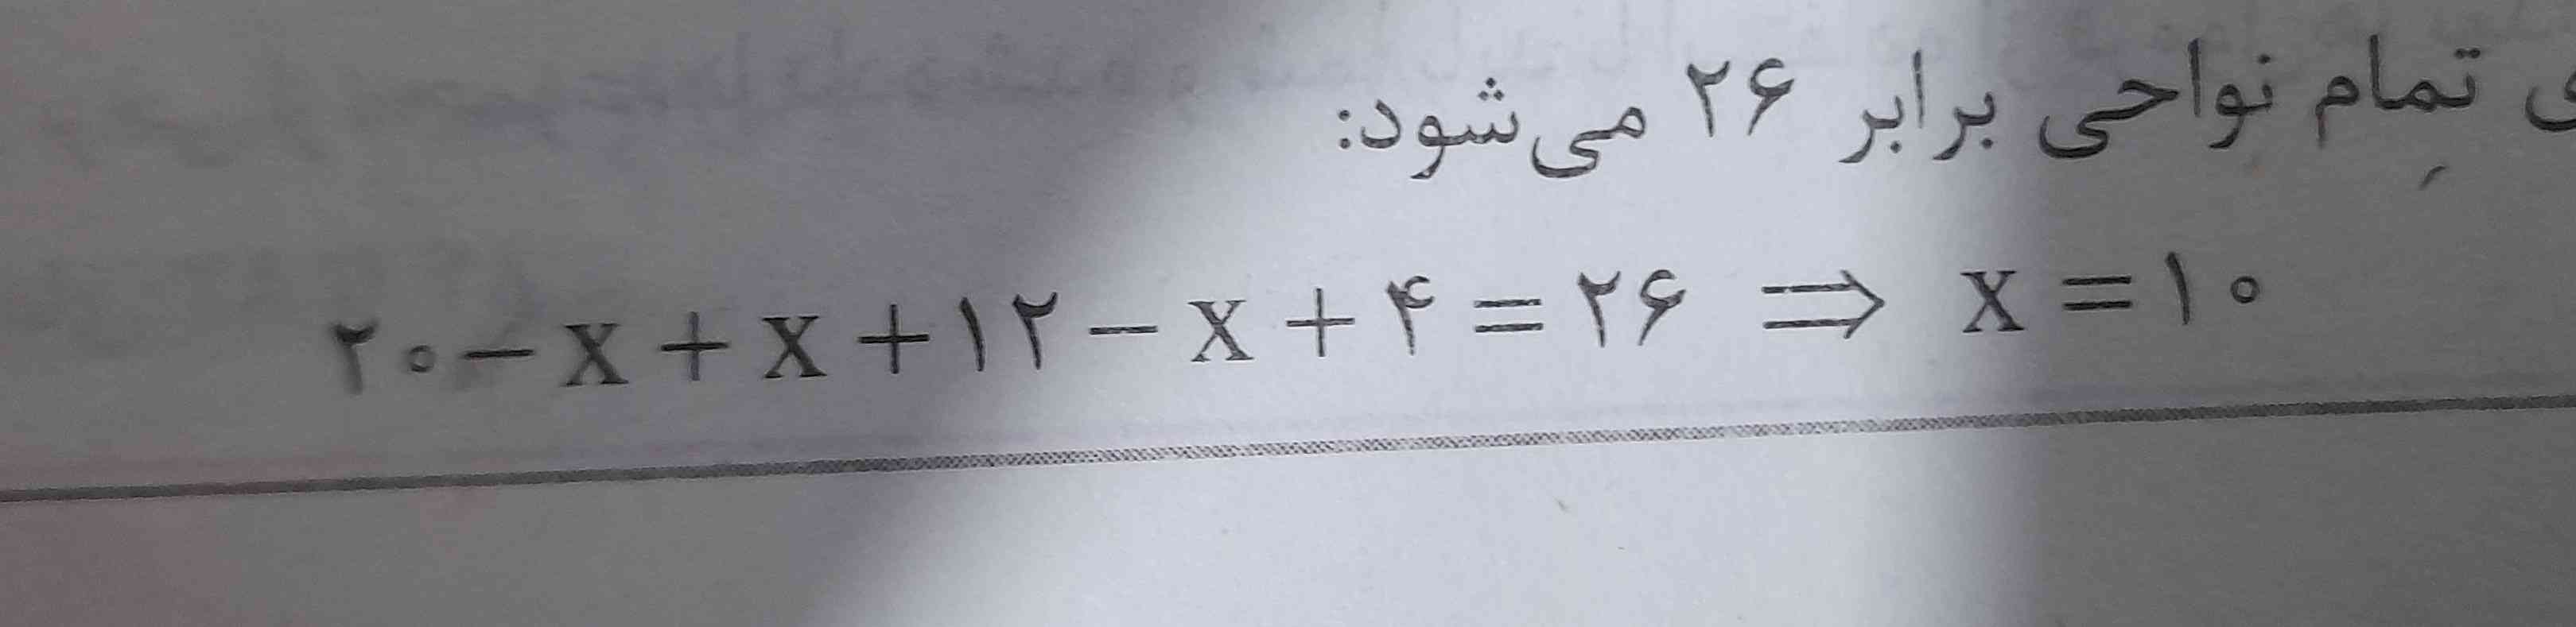 معادله رو برام شرح بدید 
چطور x شد ۱۰ 